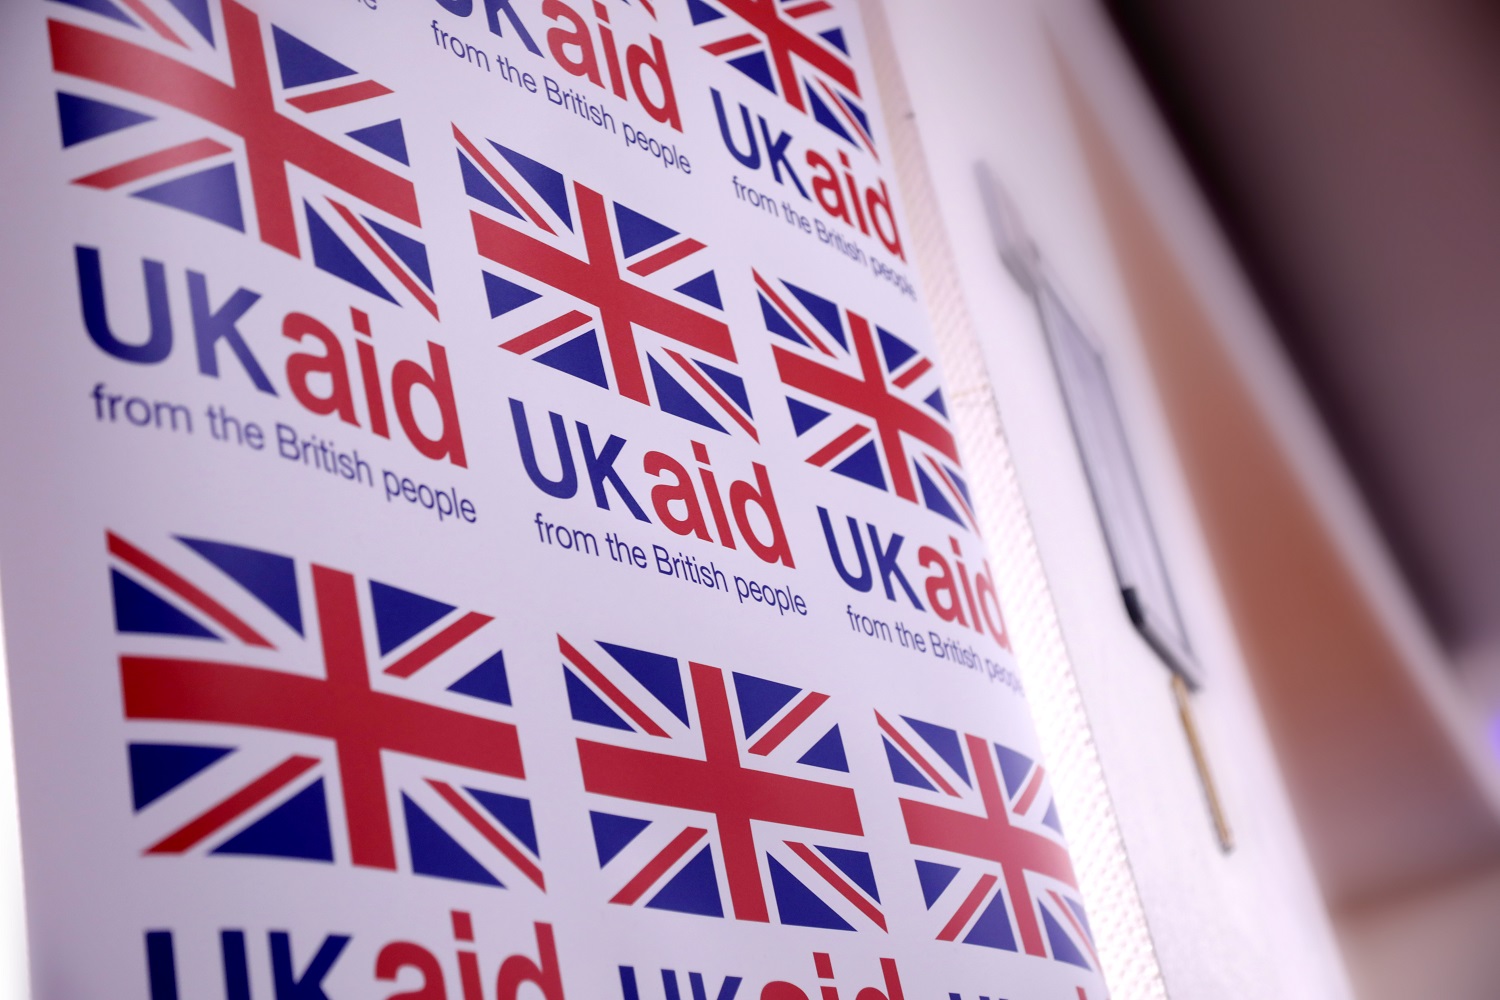 Image of UK aid logo